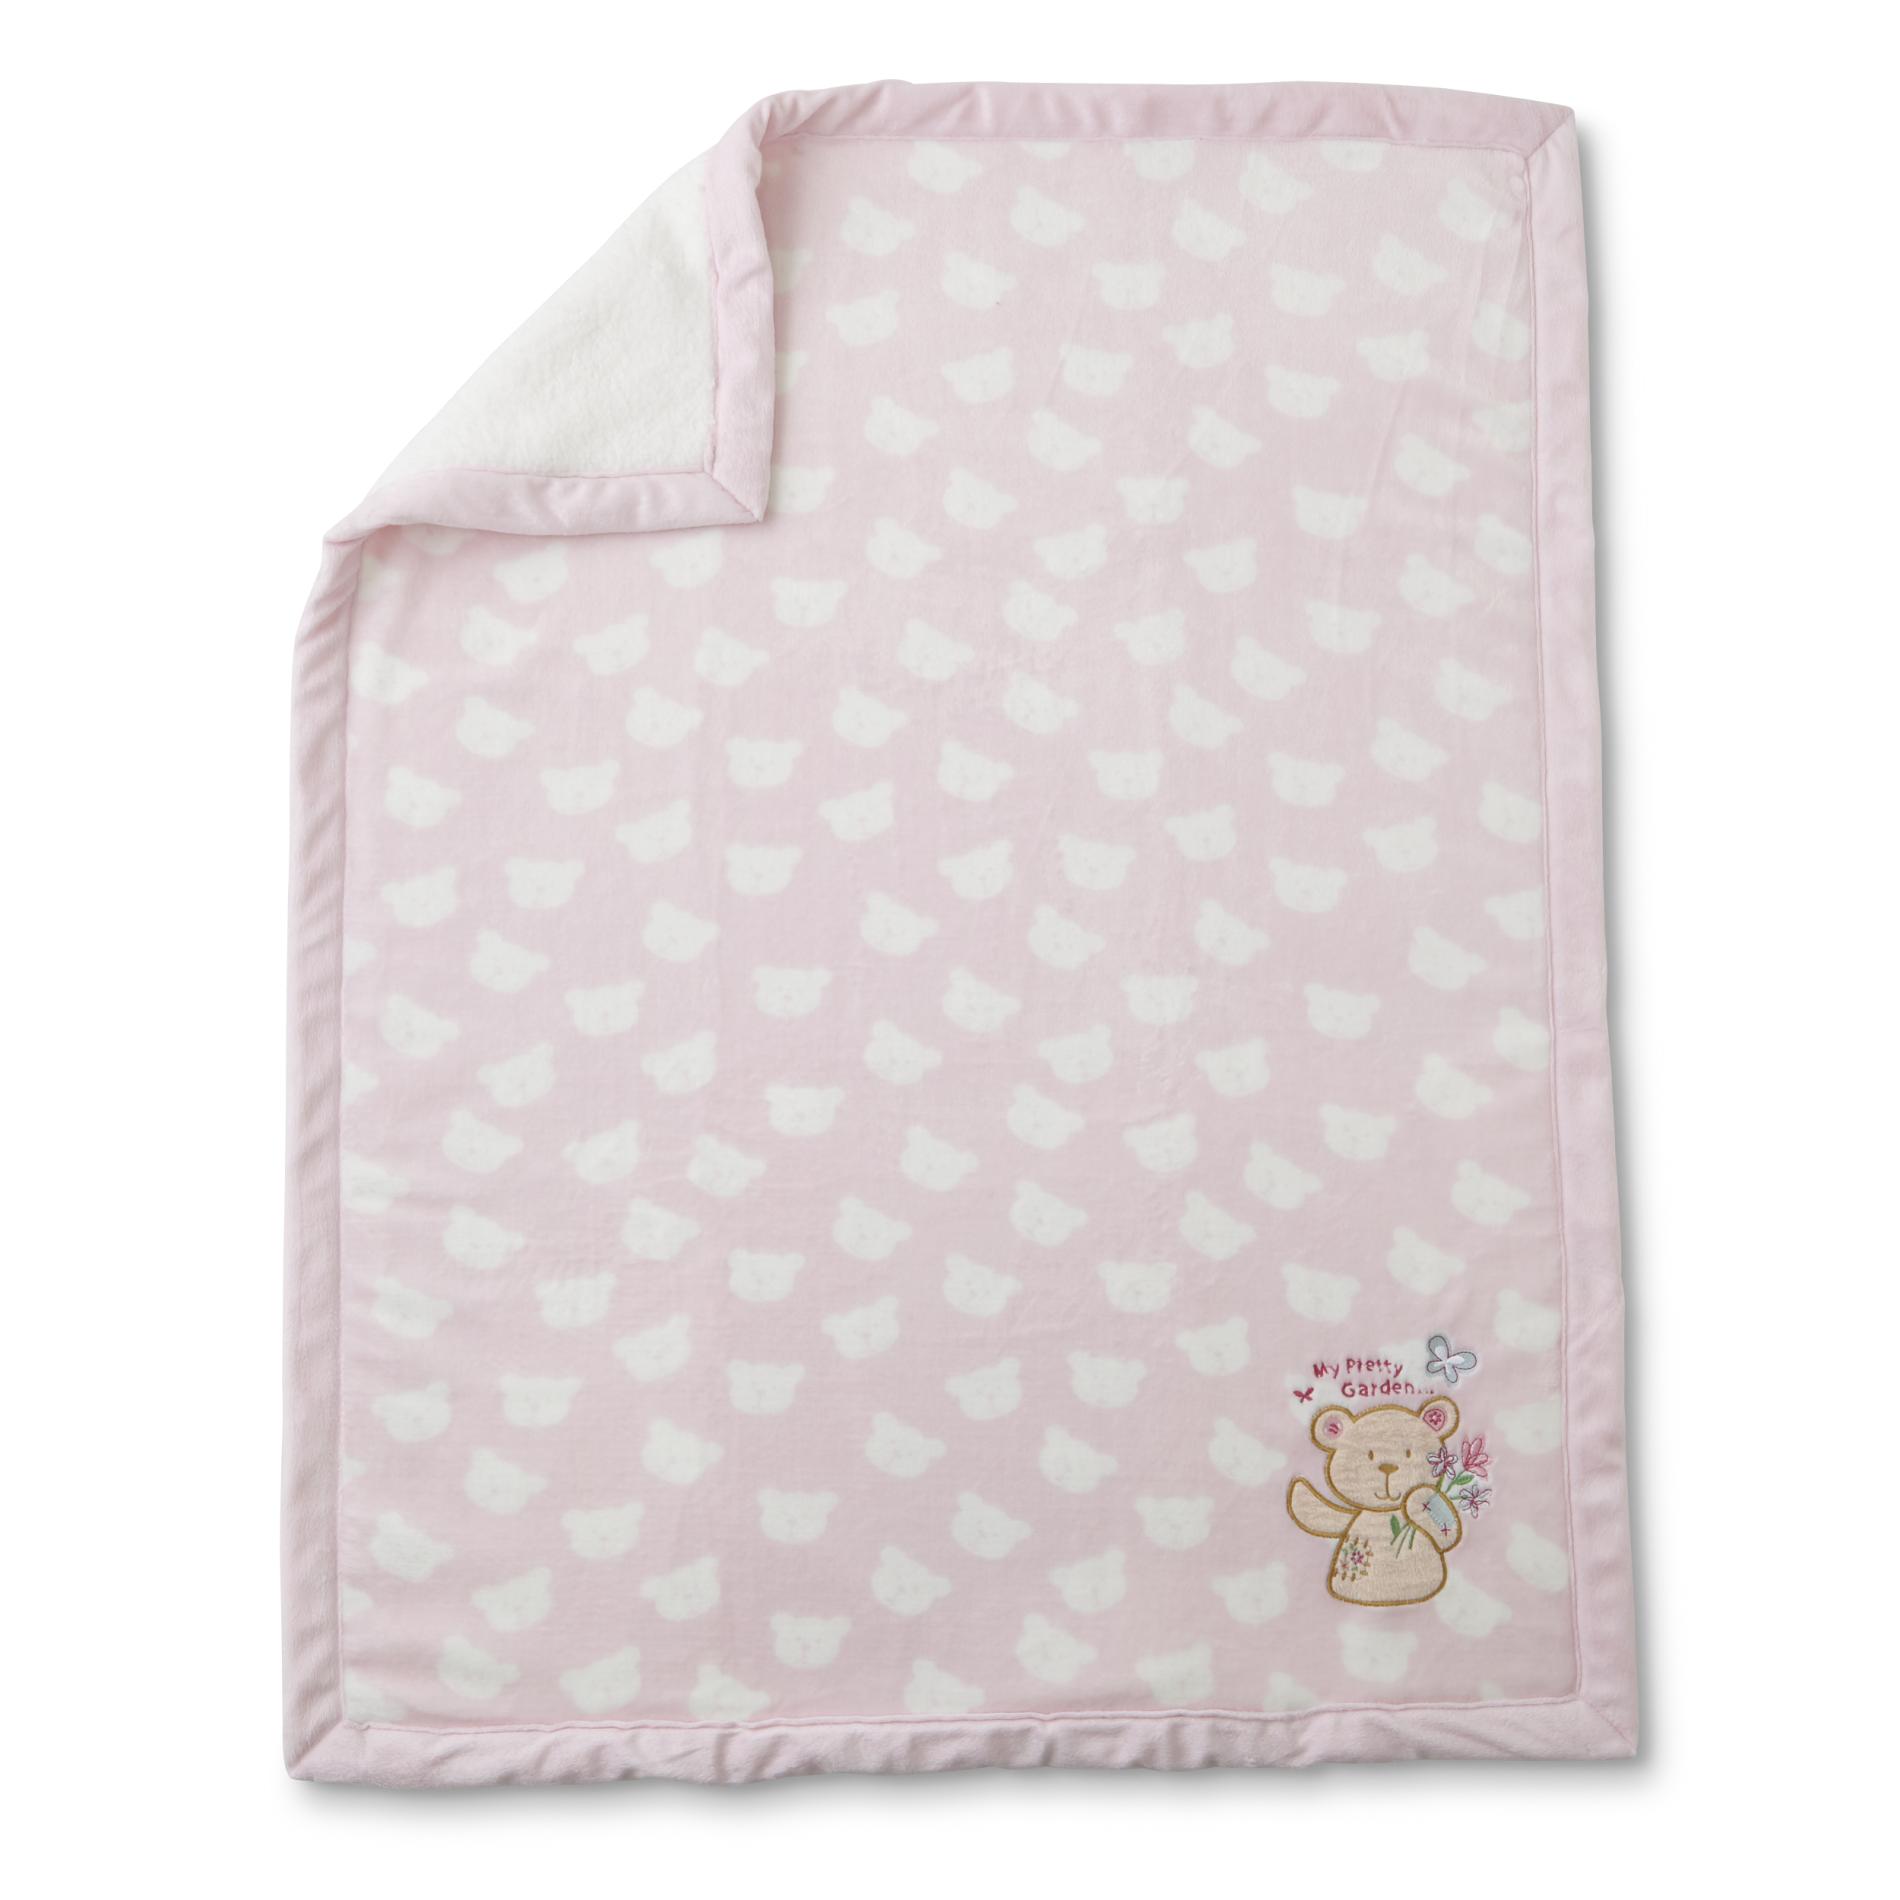 Little Wonders Infant Girls' Cloudy Blanket - My Pretty Garden